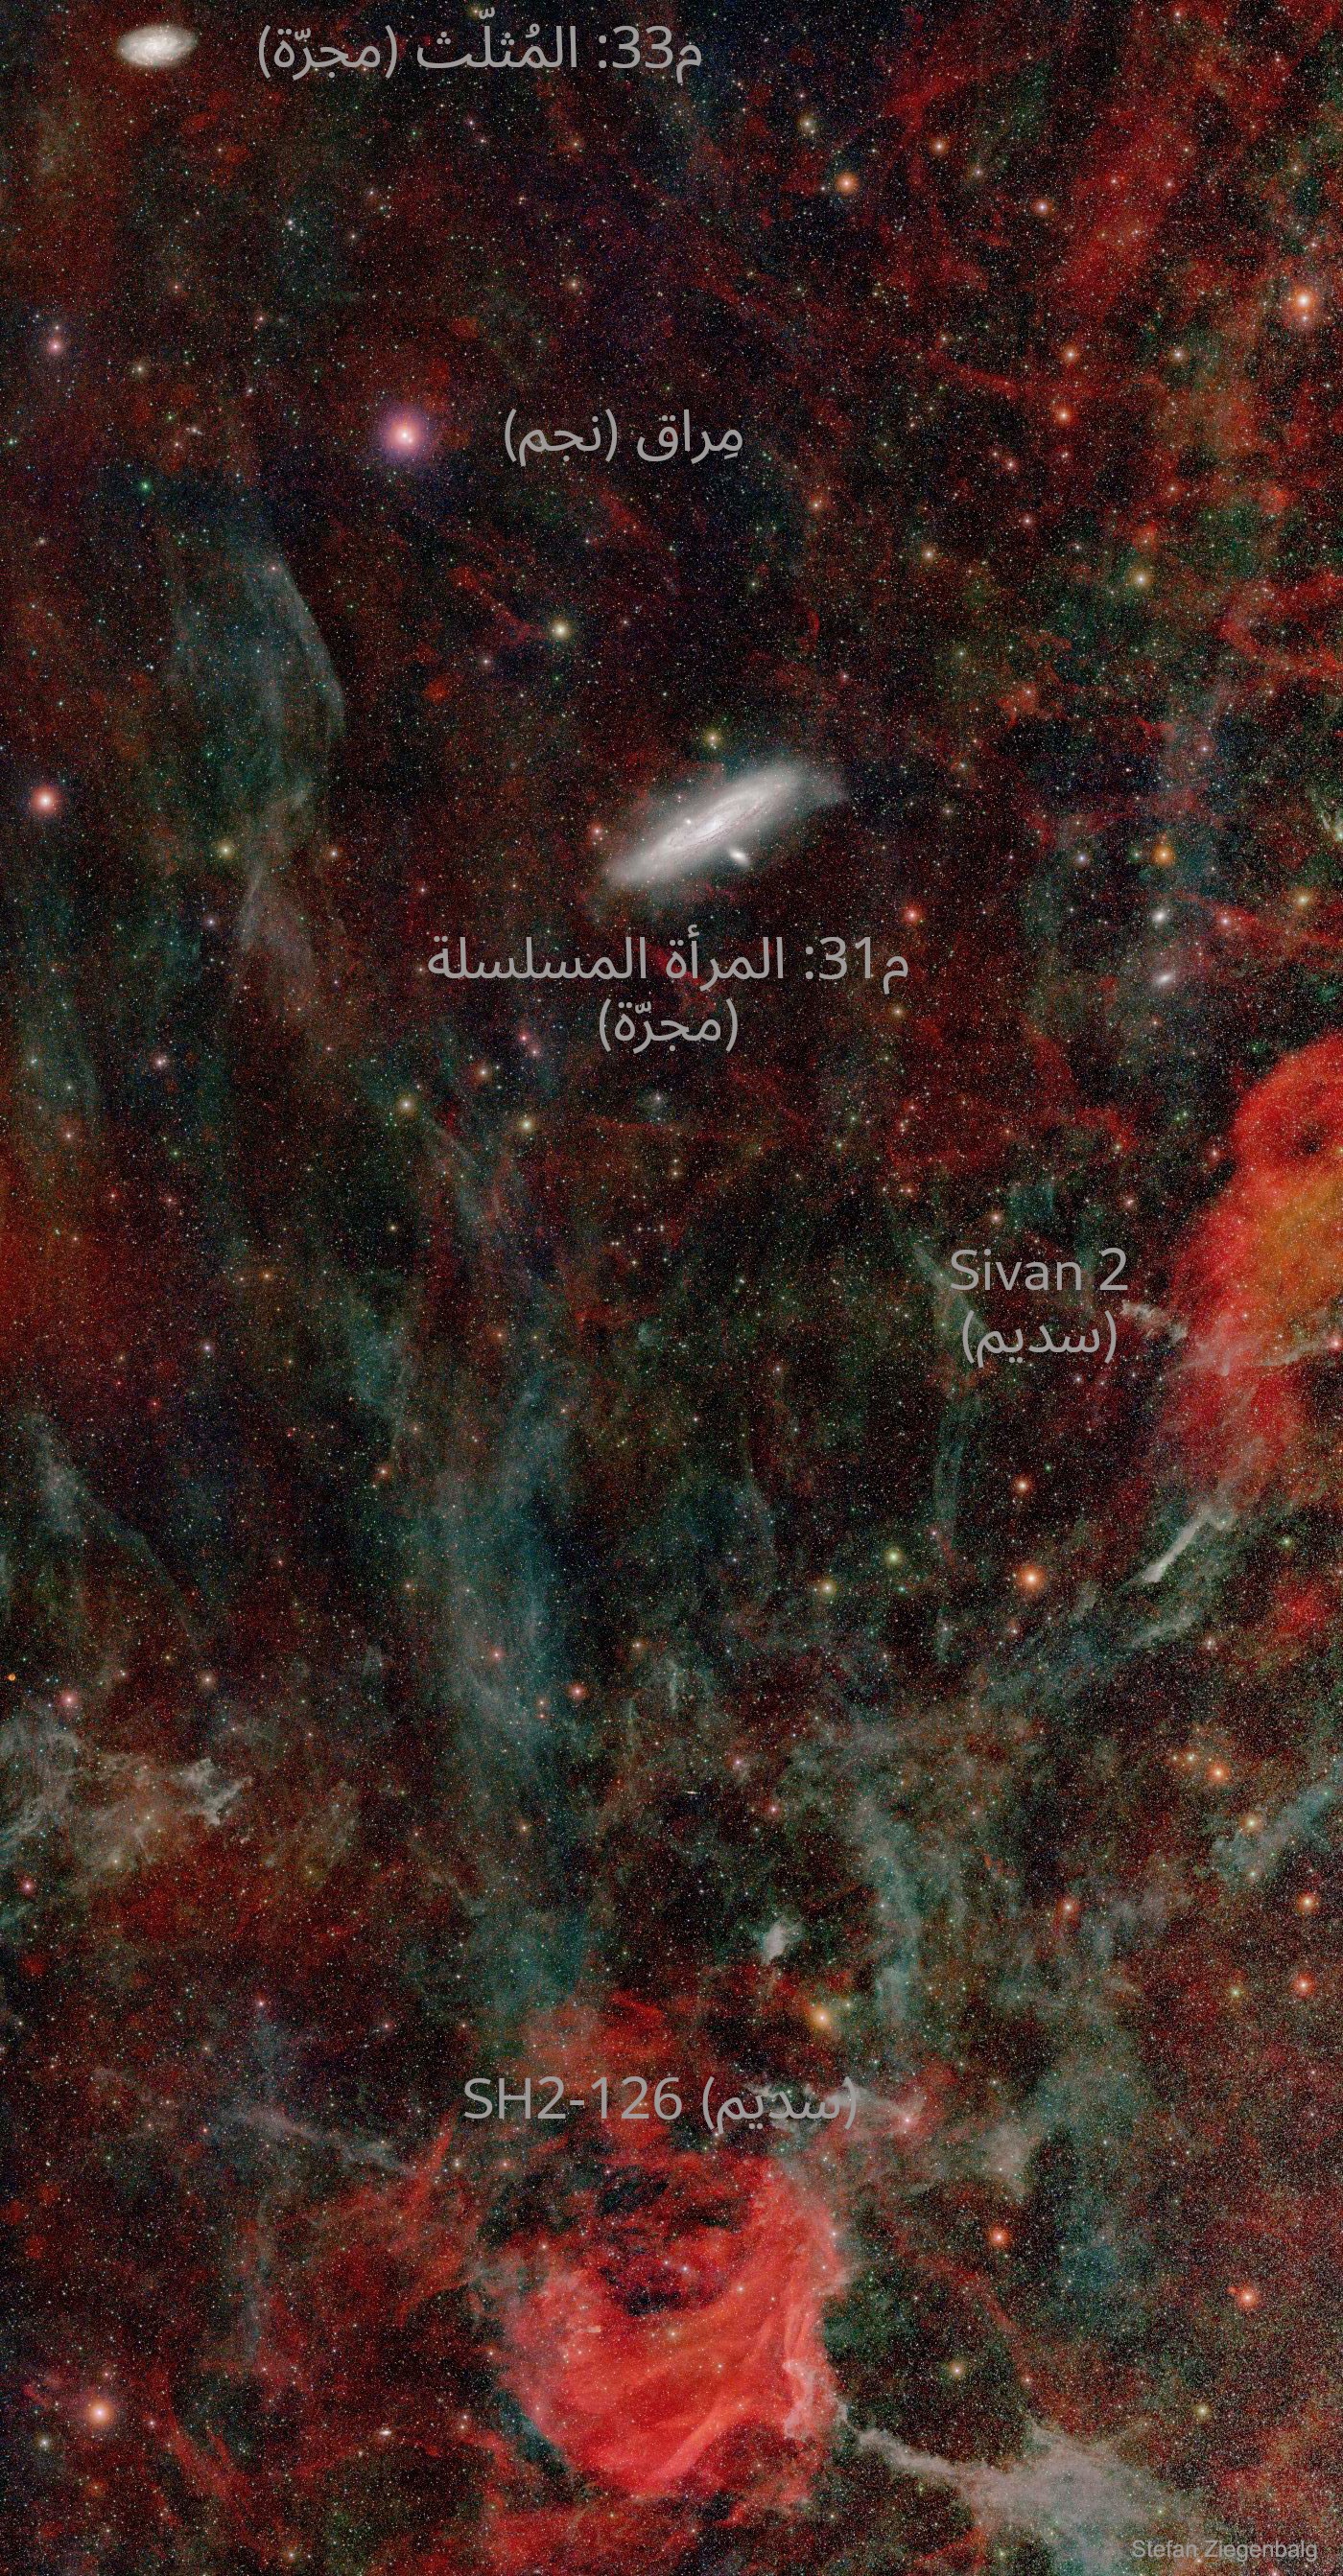 نسخة معنونة من الصورة وُضّح عليها كل من مجرة المثلث م33 ونجم المِراق ومجرة المرأة المسلسلة م31 وسديمي Sivan 2 وَ SH2-126.